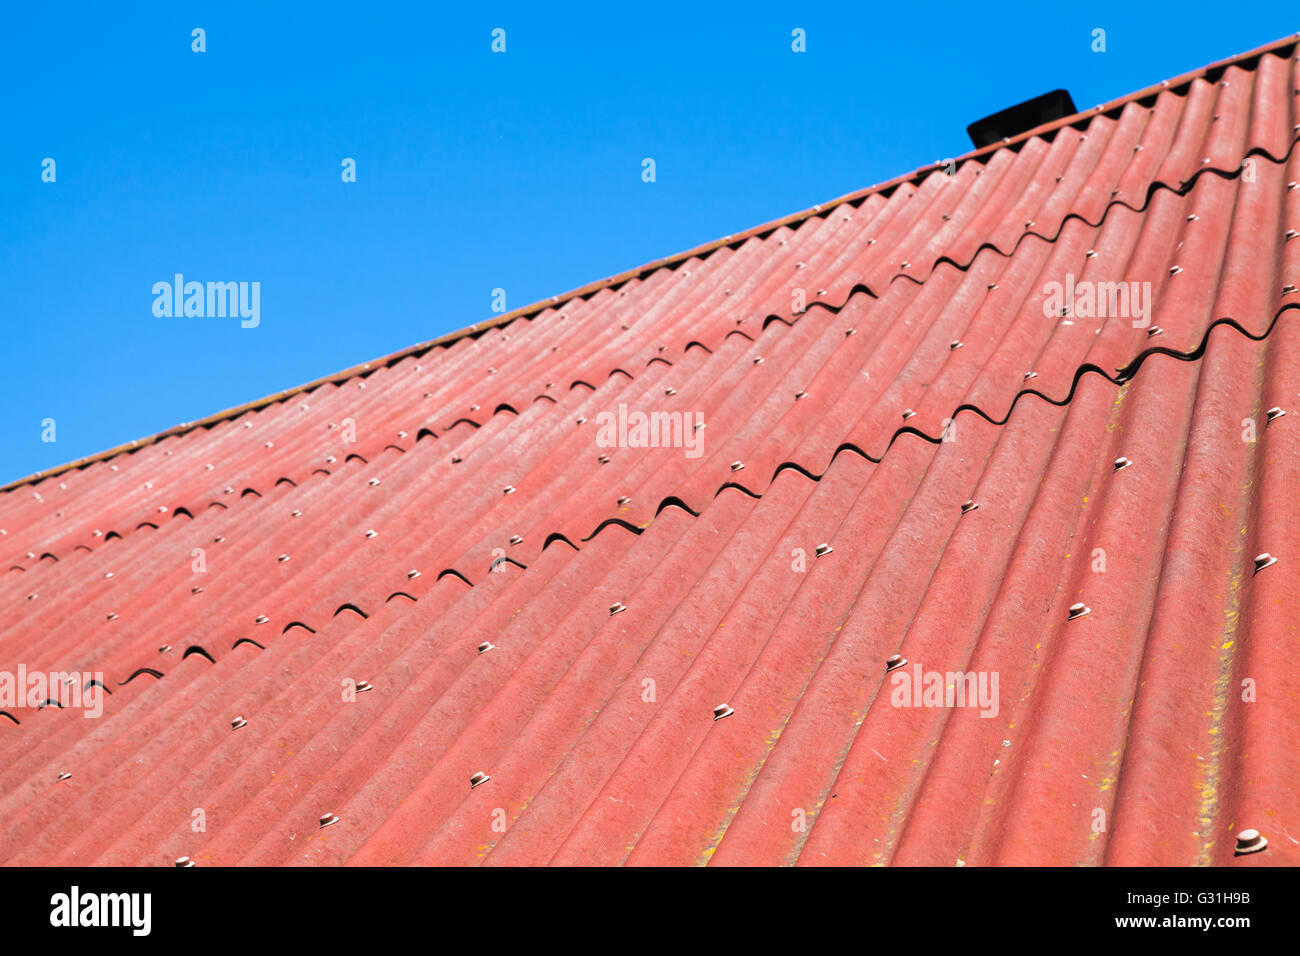 Blauer Himmel und rotem Dach gemacht von Wellpappe Karton bituminöse, Foto Hintergrundtextur Stockfoto